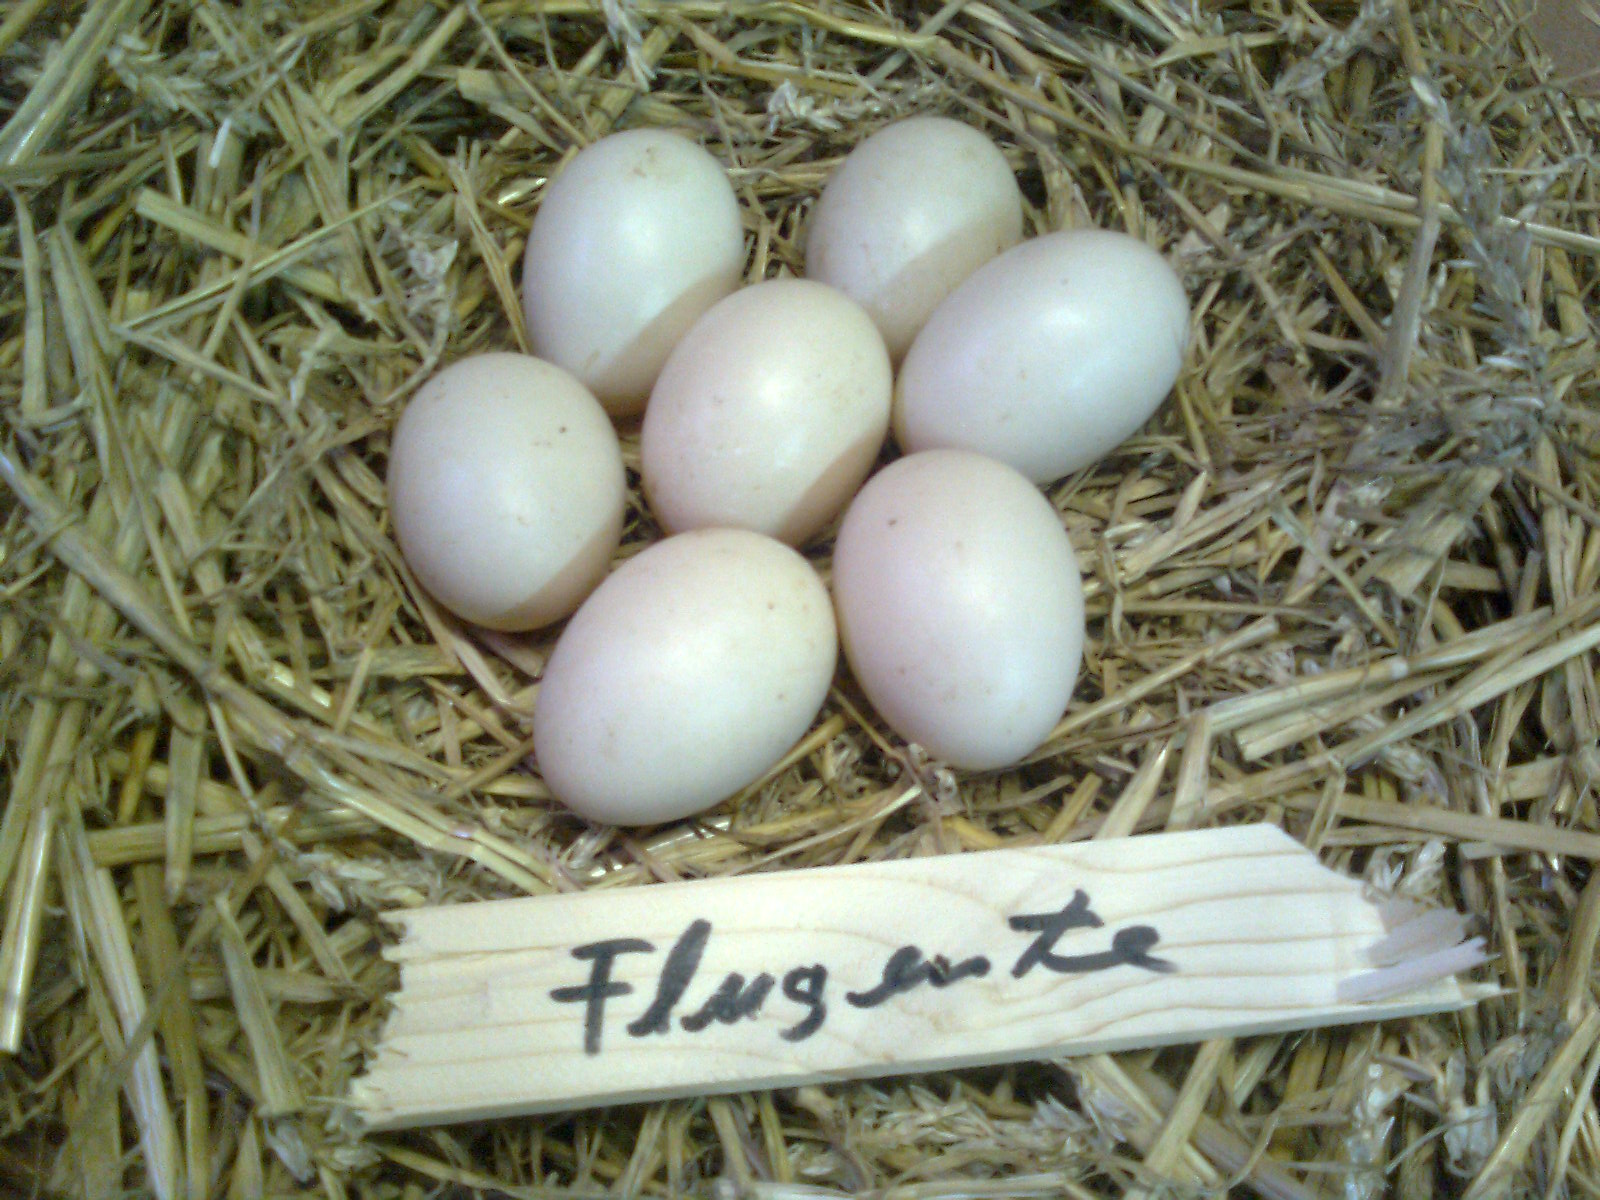 Warzenenten-Eier ca. 80g schwer
Brutdauer 35 Tage